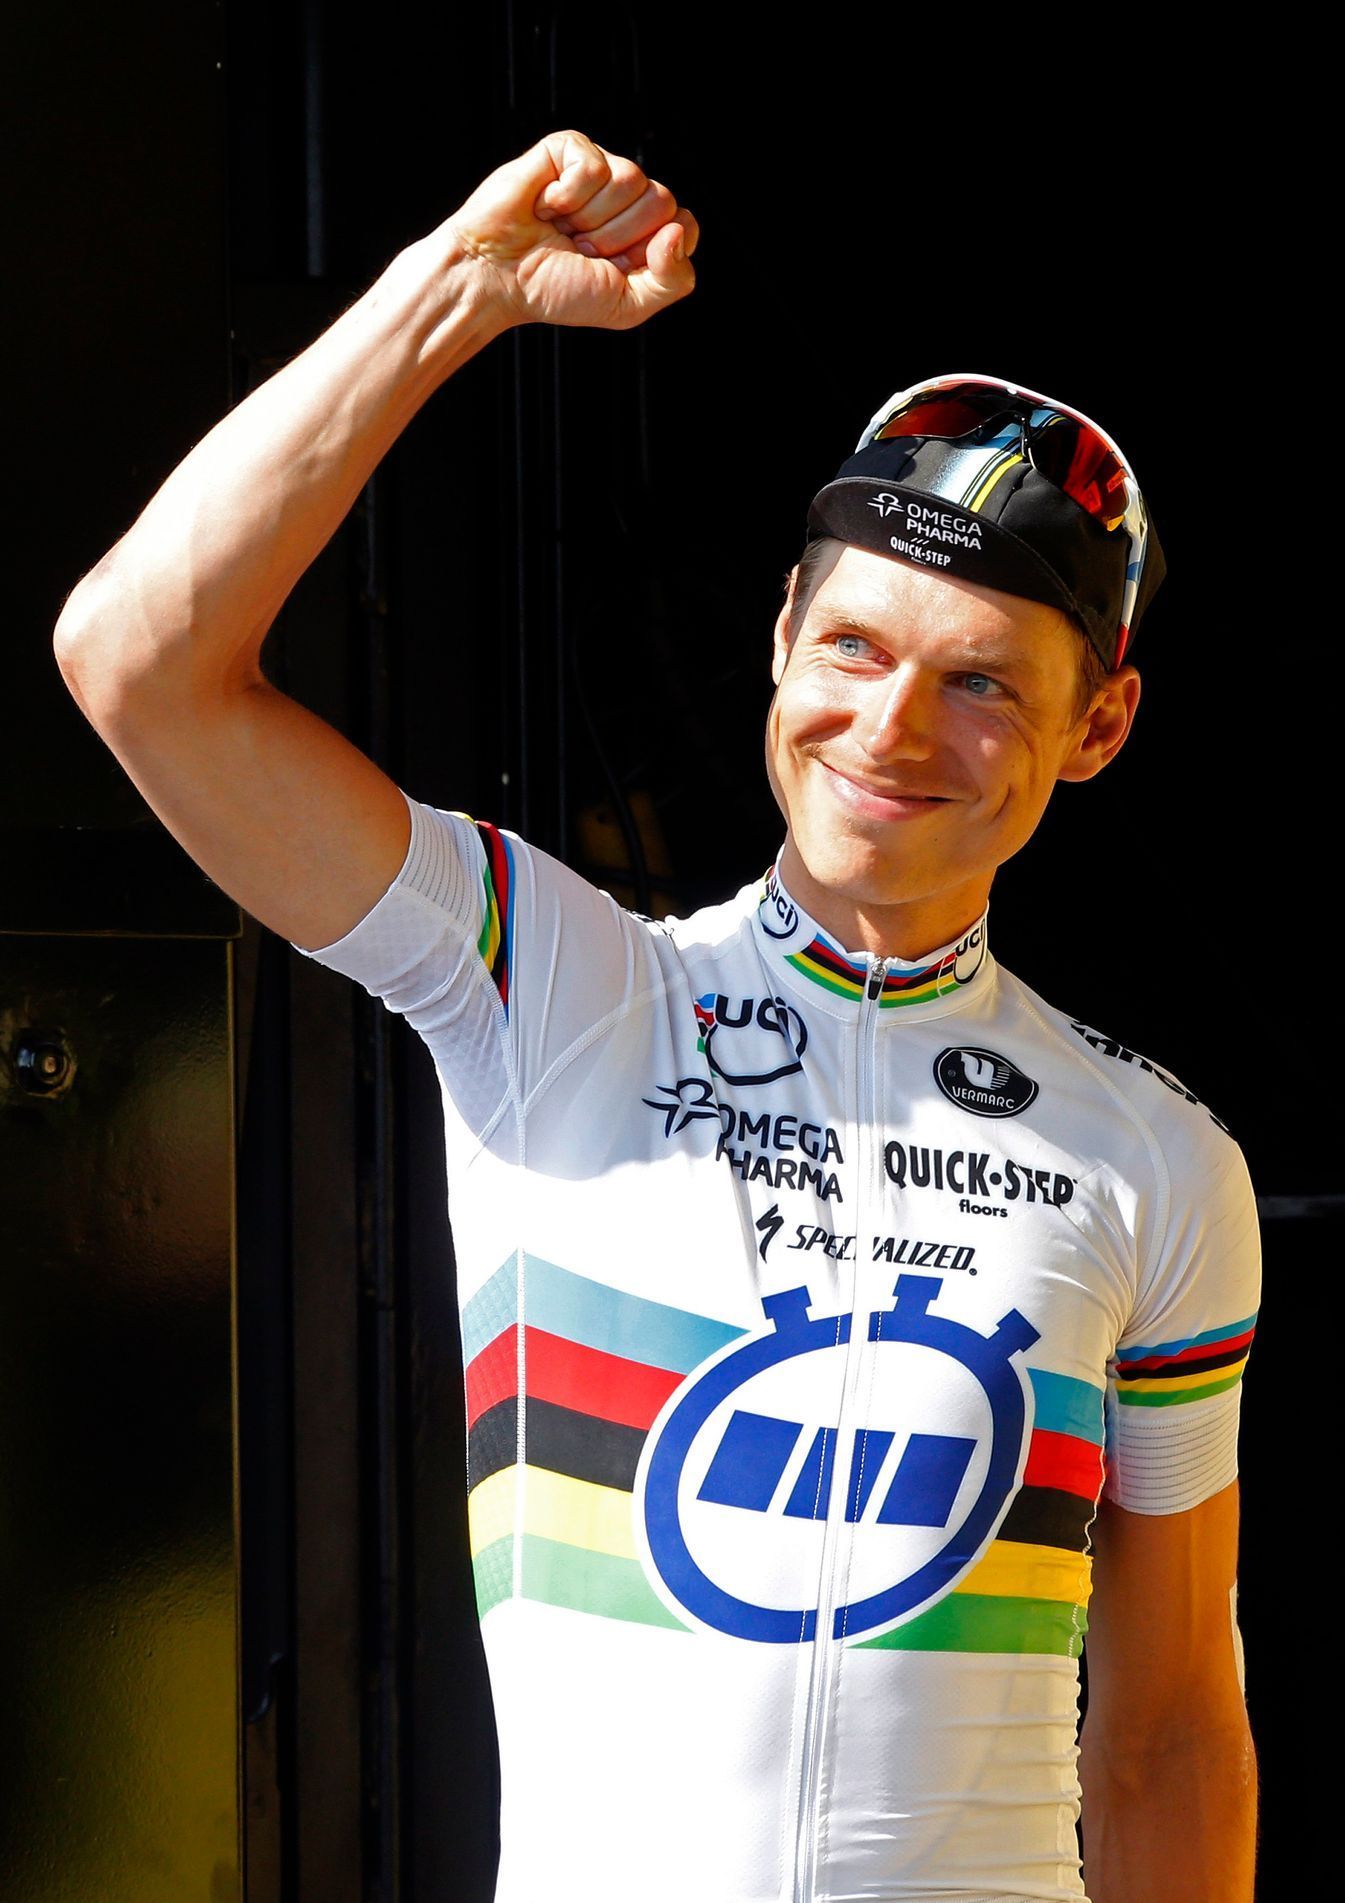 Tour de France 2013 - 11. etapa, časovka (Tony Martin)